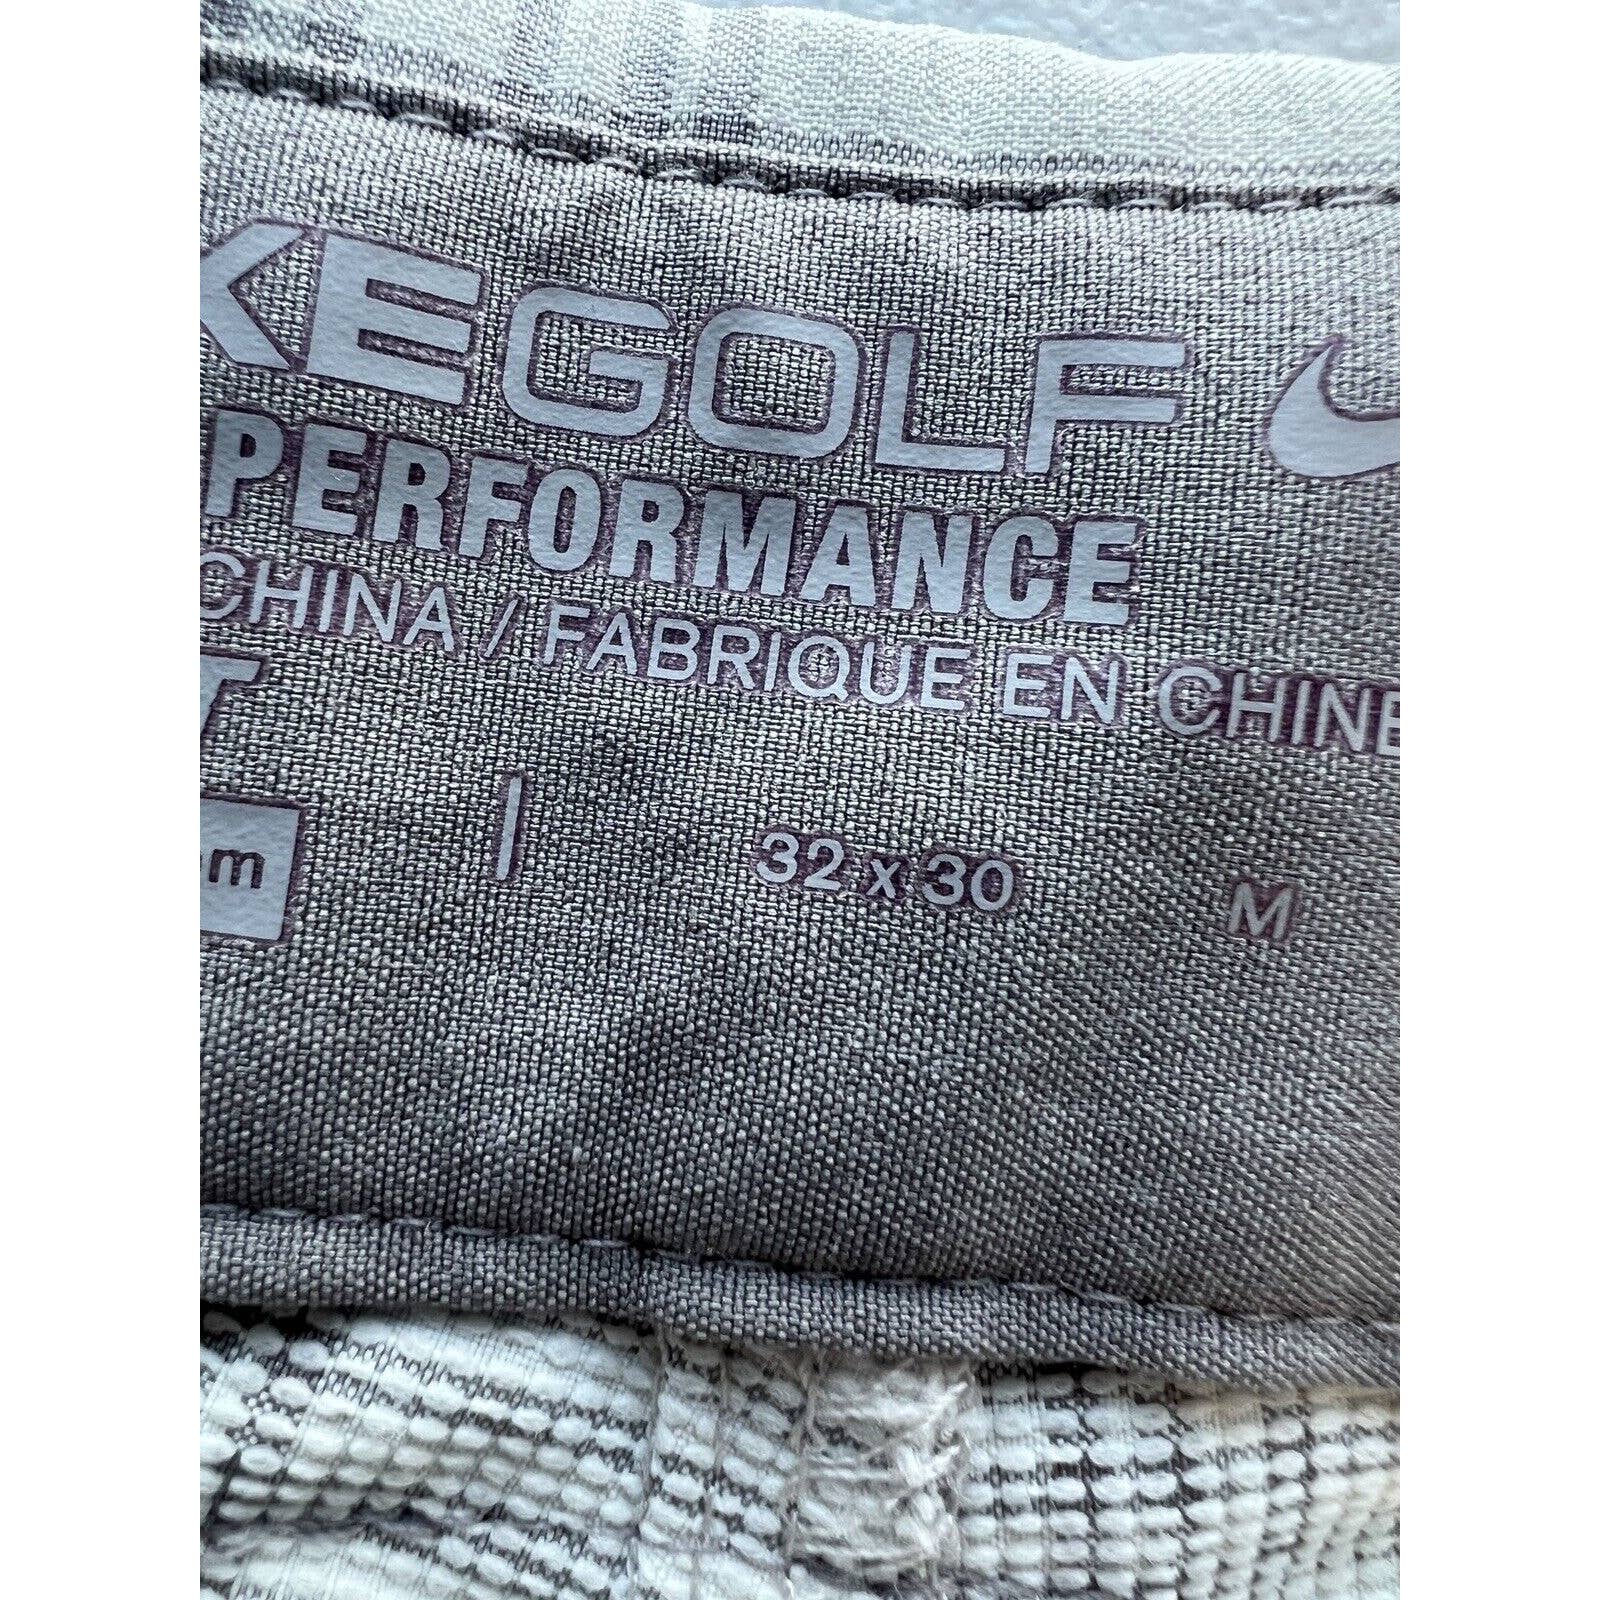 Nike Golf Pants Mens 32x30 Tour Performance Gray White Plaid Chino Slacks